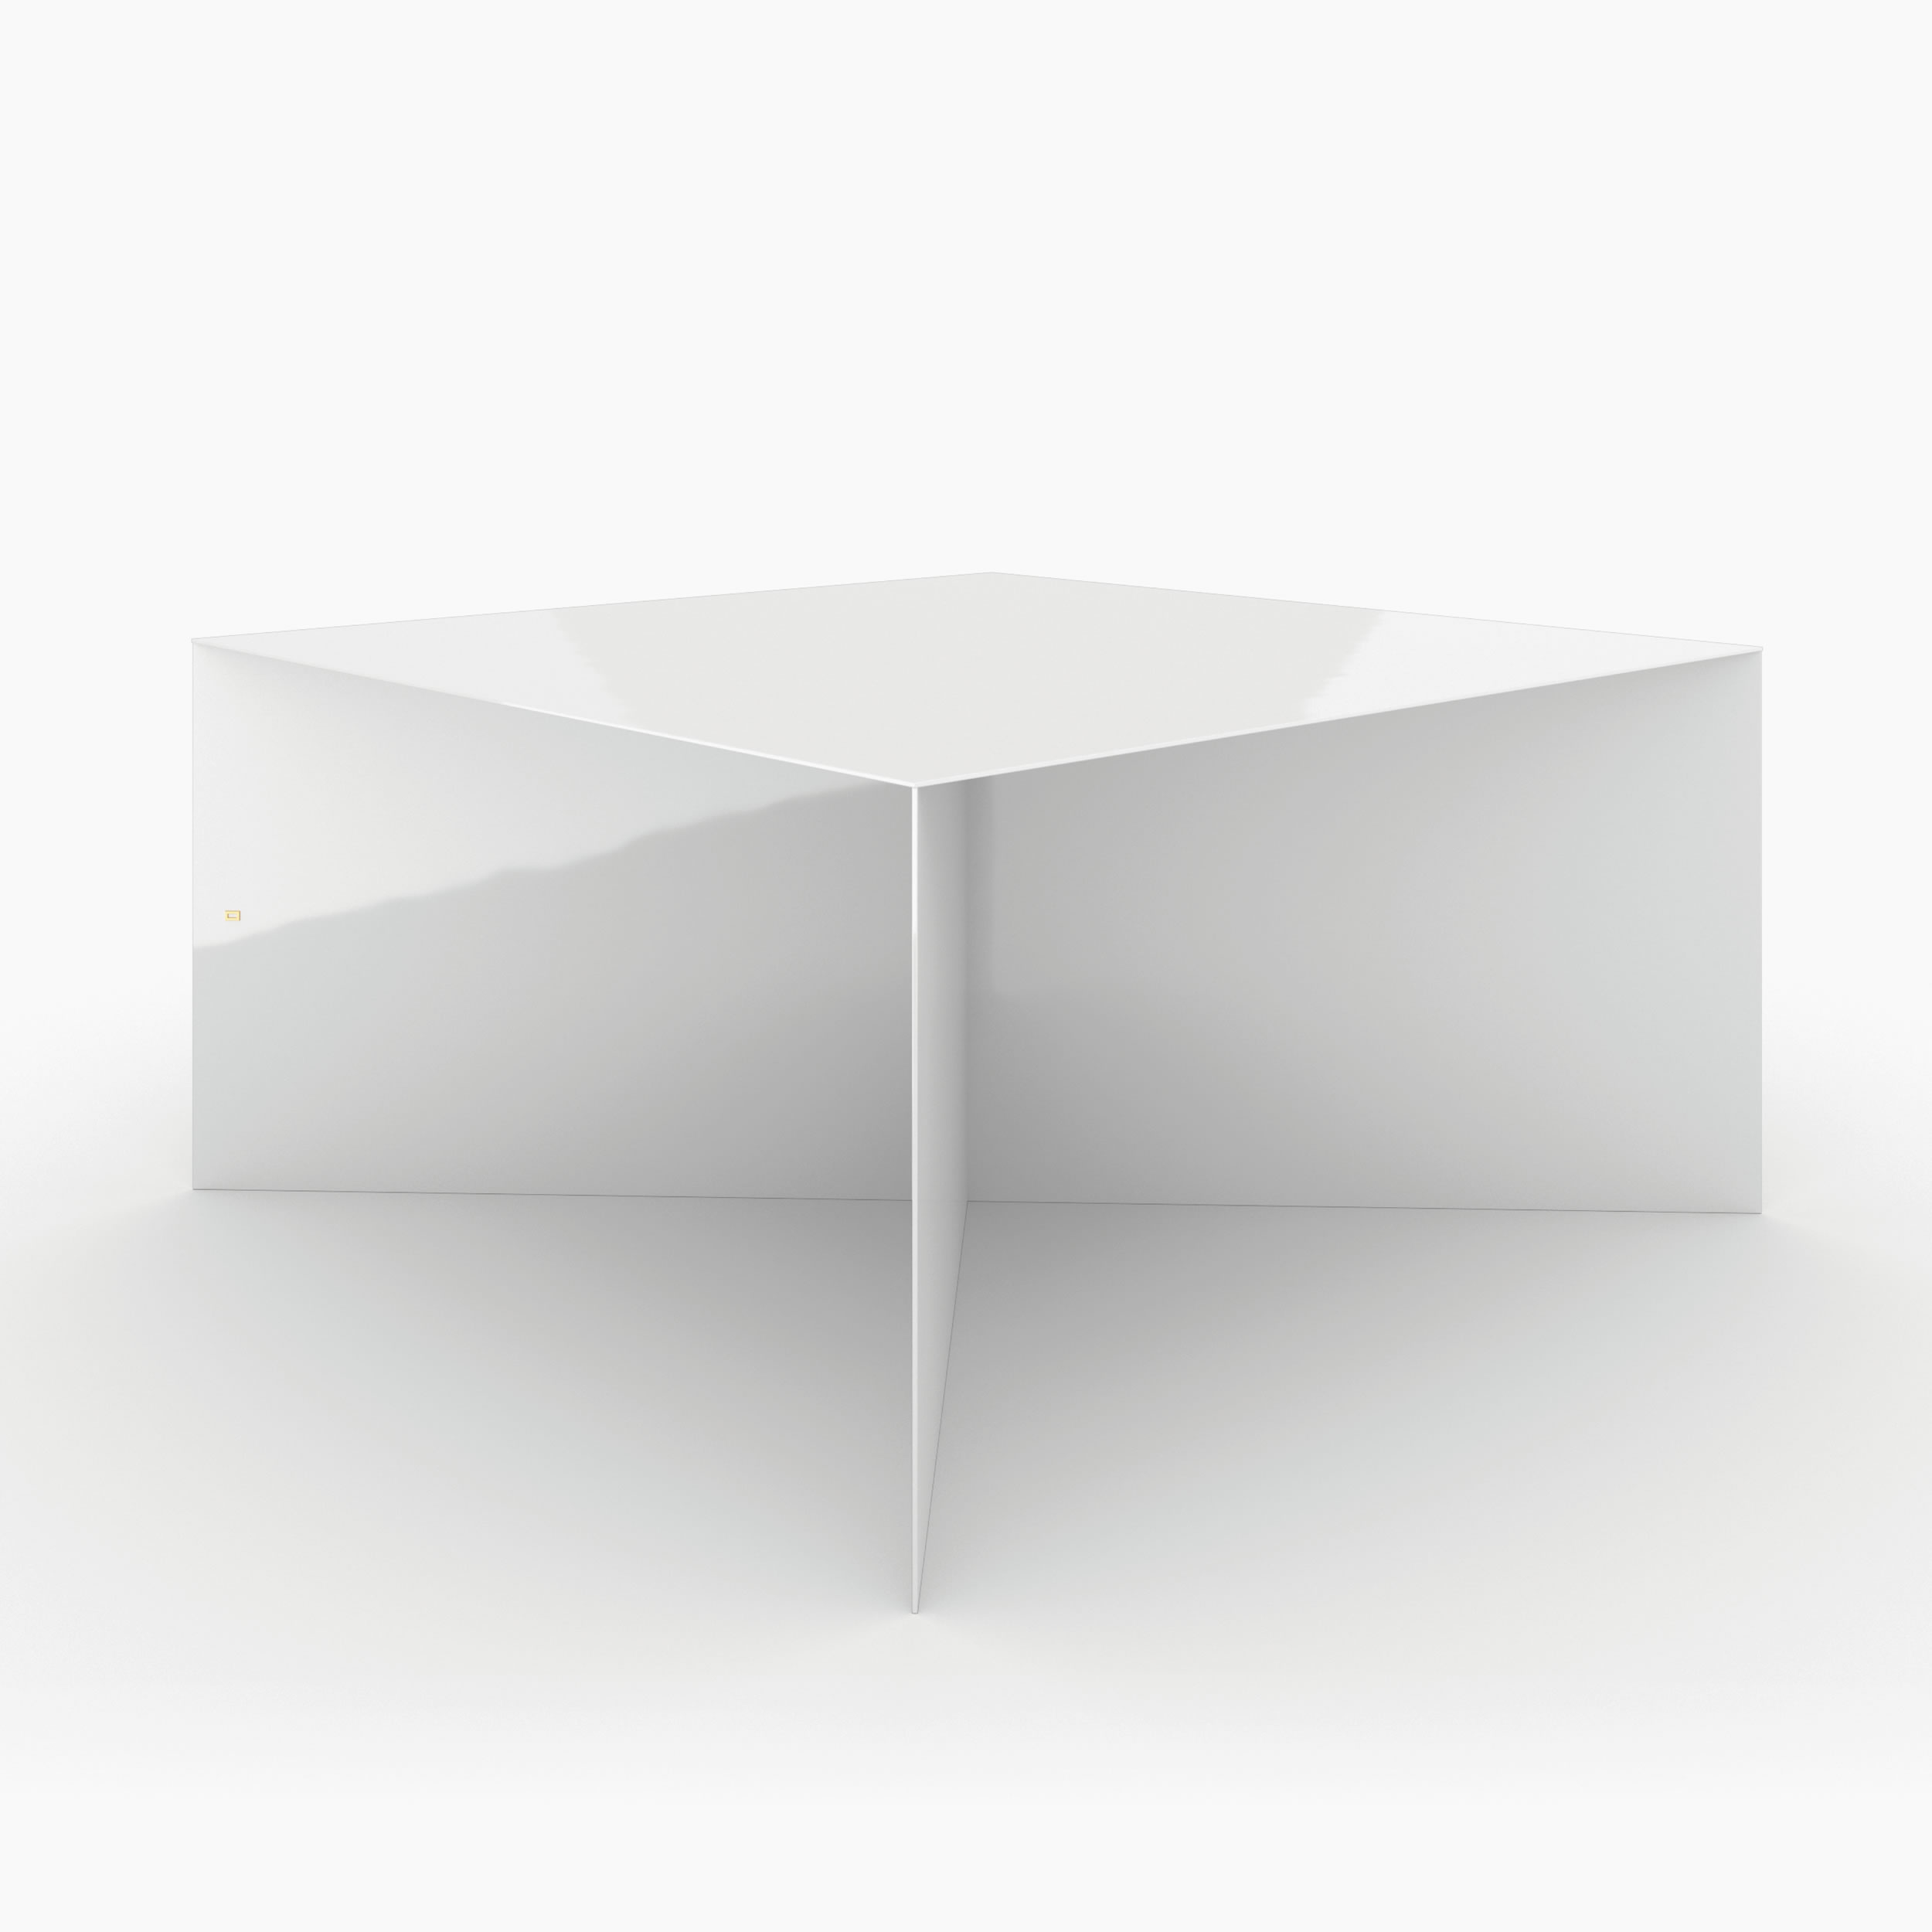 Tisch scheibenfuss weiss artanddesign Buero Elle Decor Tische FS 86 FELIX SCHWAKE